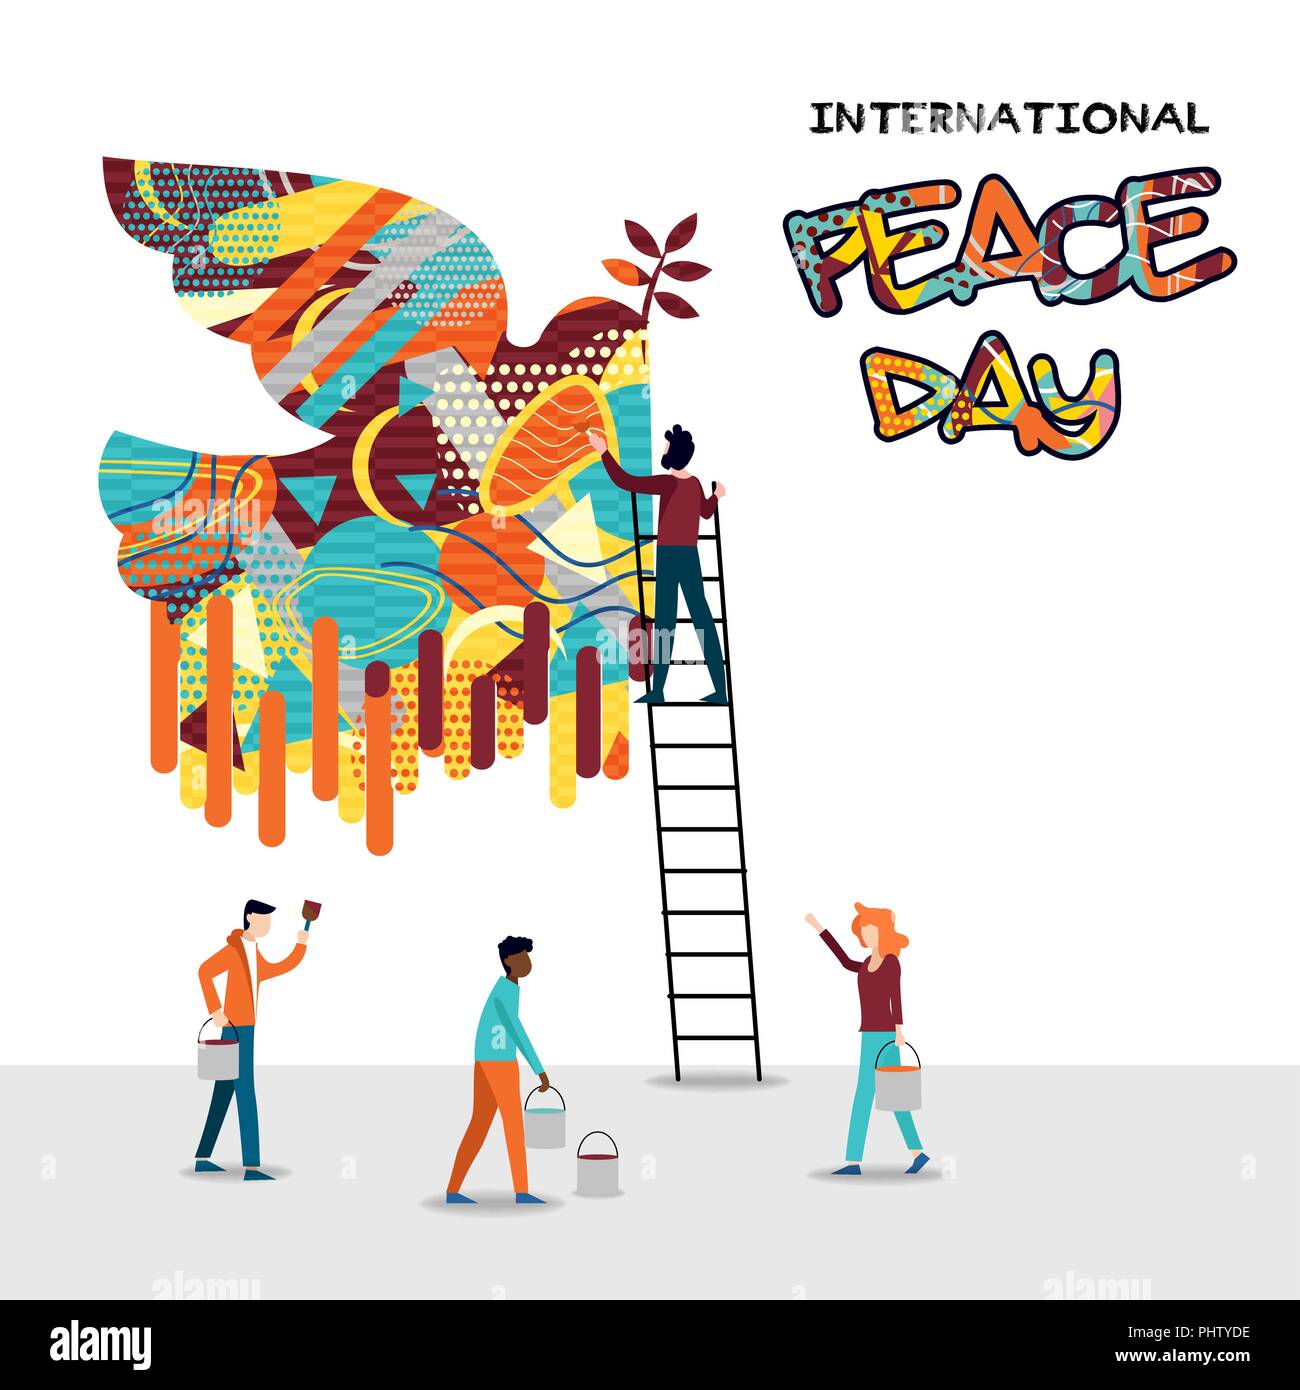 Internationaler Friedenstag Karte für die Welt helfen und die Kultur der Einheit. Diverse Freund Gruppe teamwork Abbildung. EPS 10 Vektor. Stock Vektor